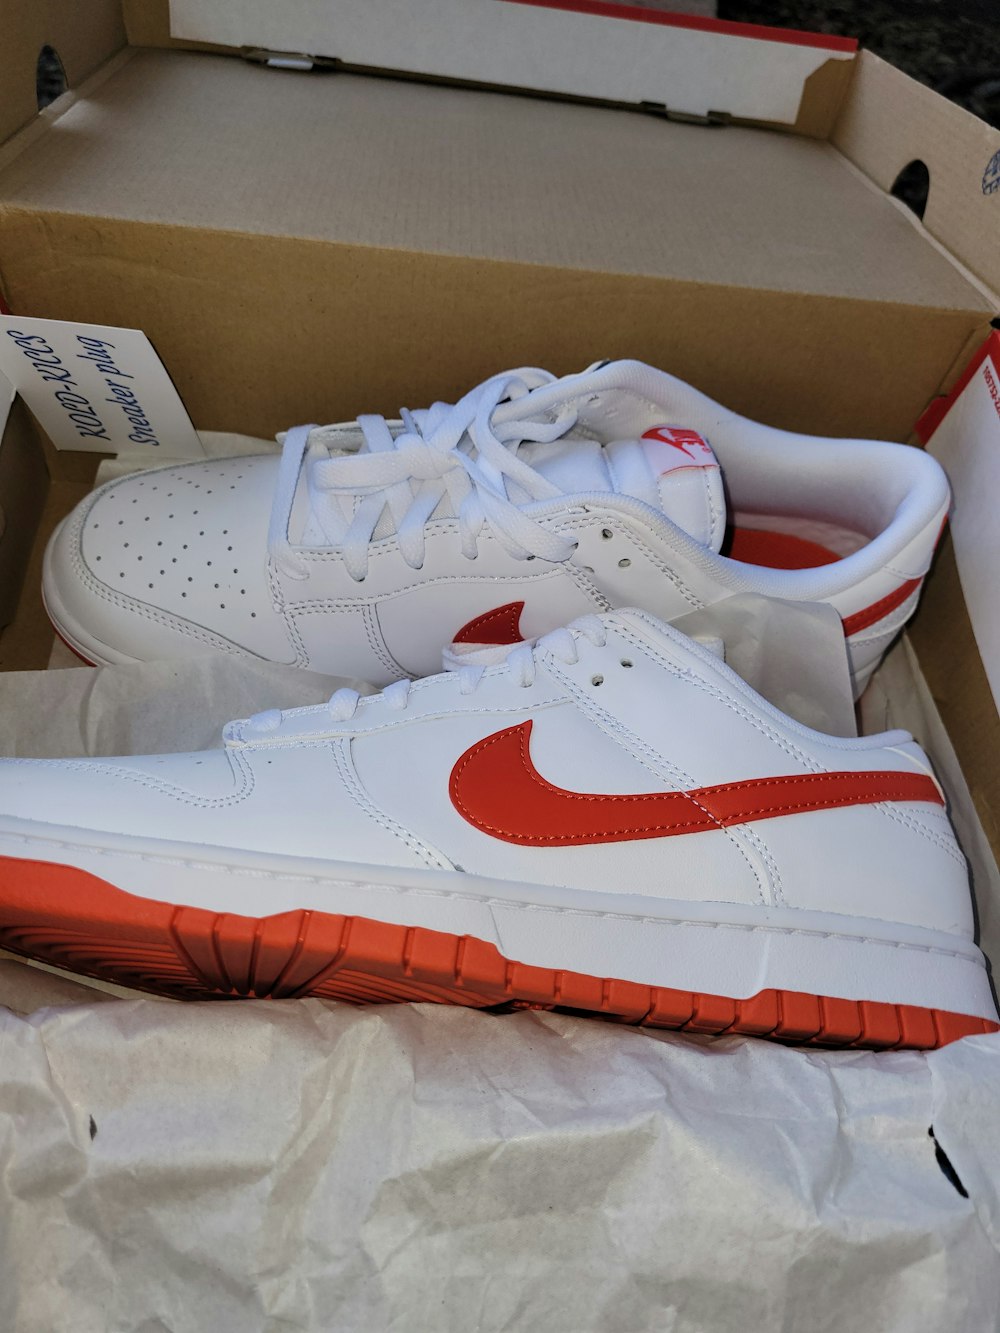 Un par de zapatillas blancas y rojas en una caja